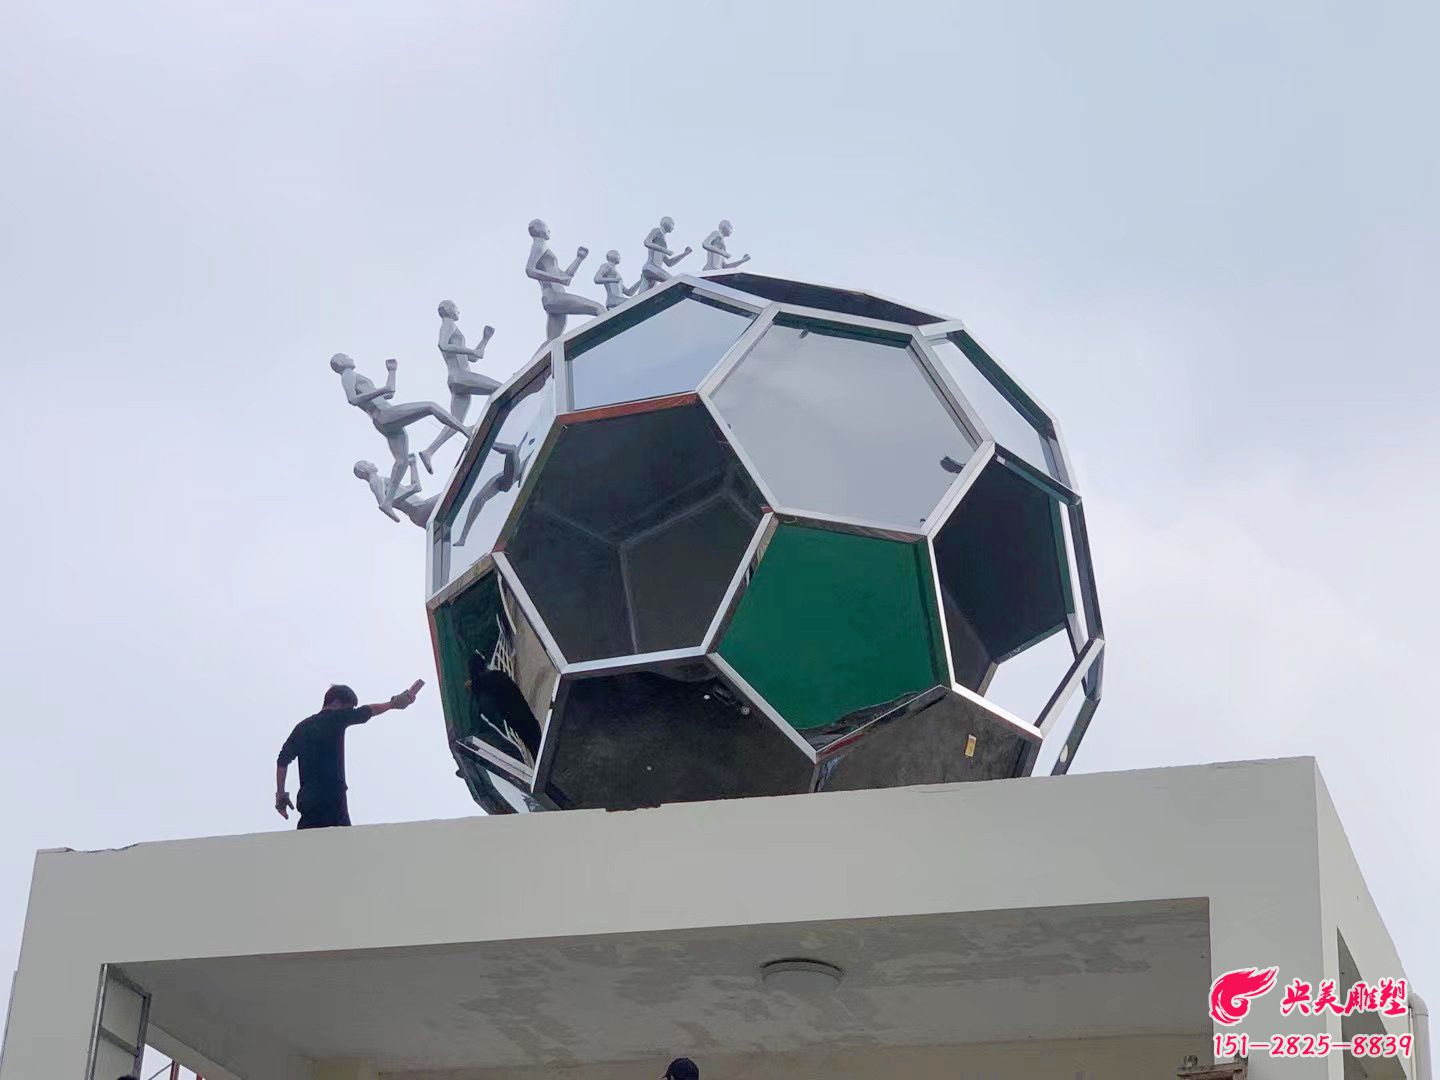 广东梅州市剑英体育馆-足球体育主题景观标识雕塑